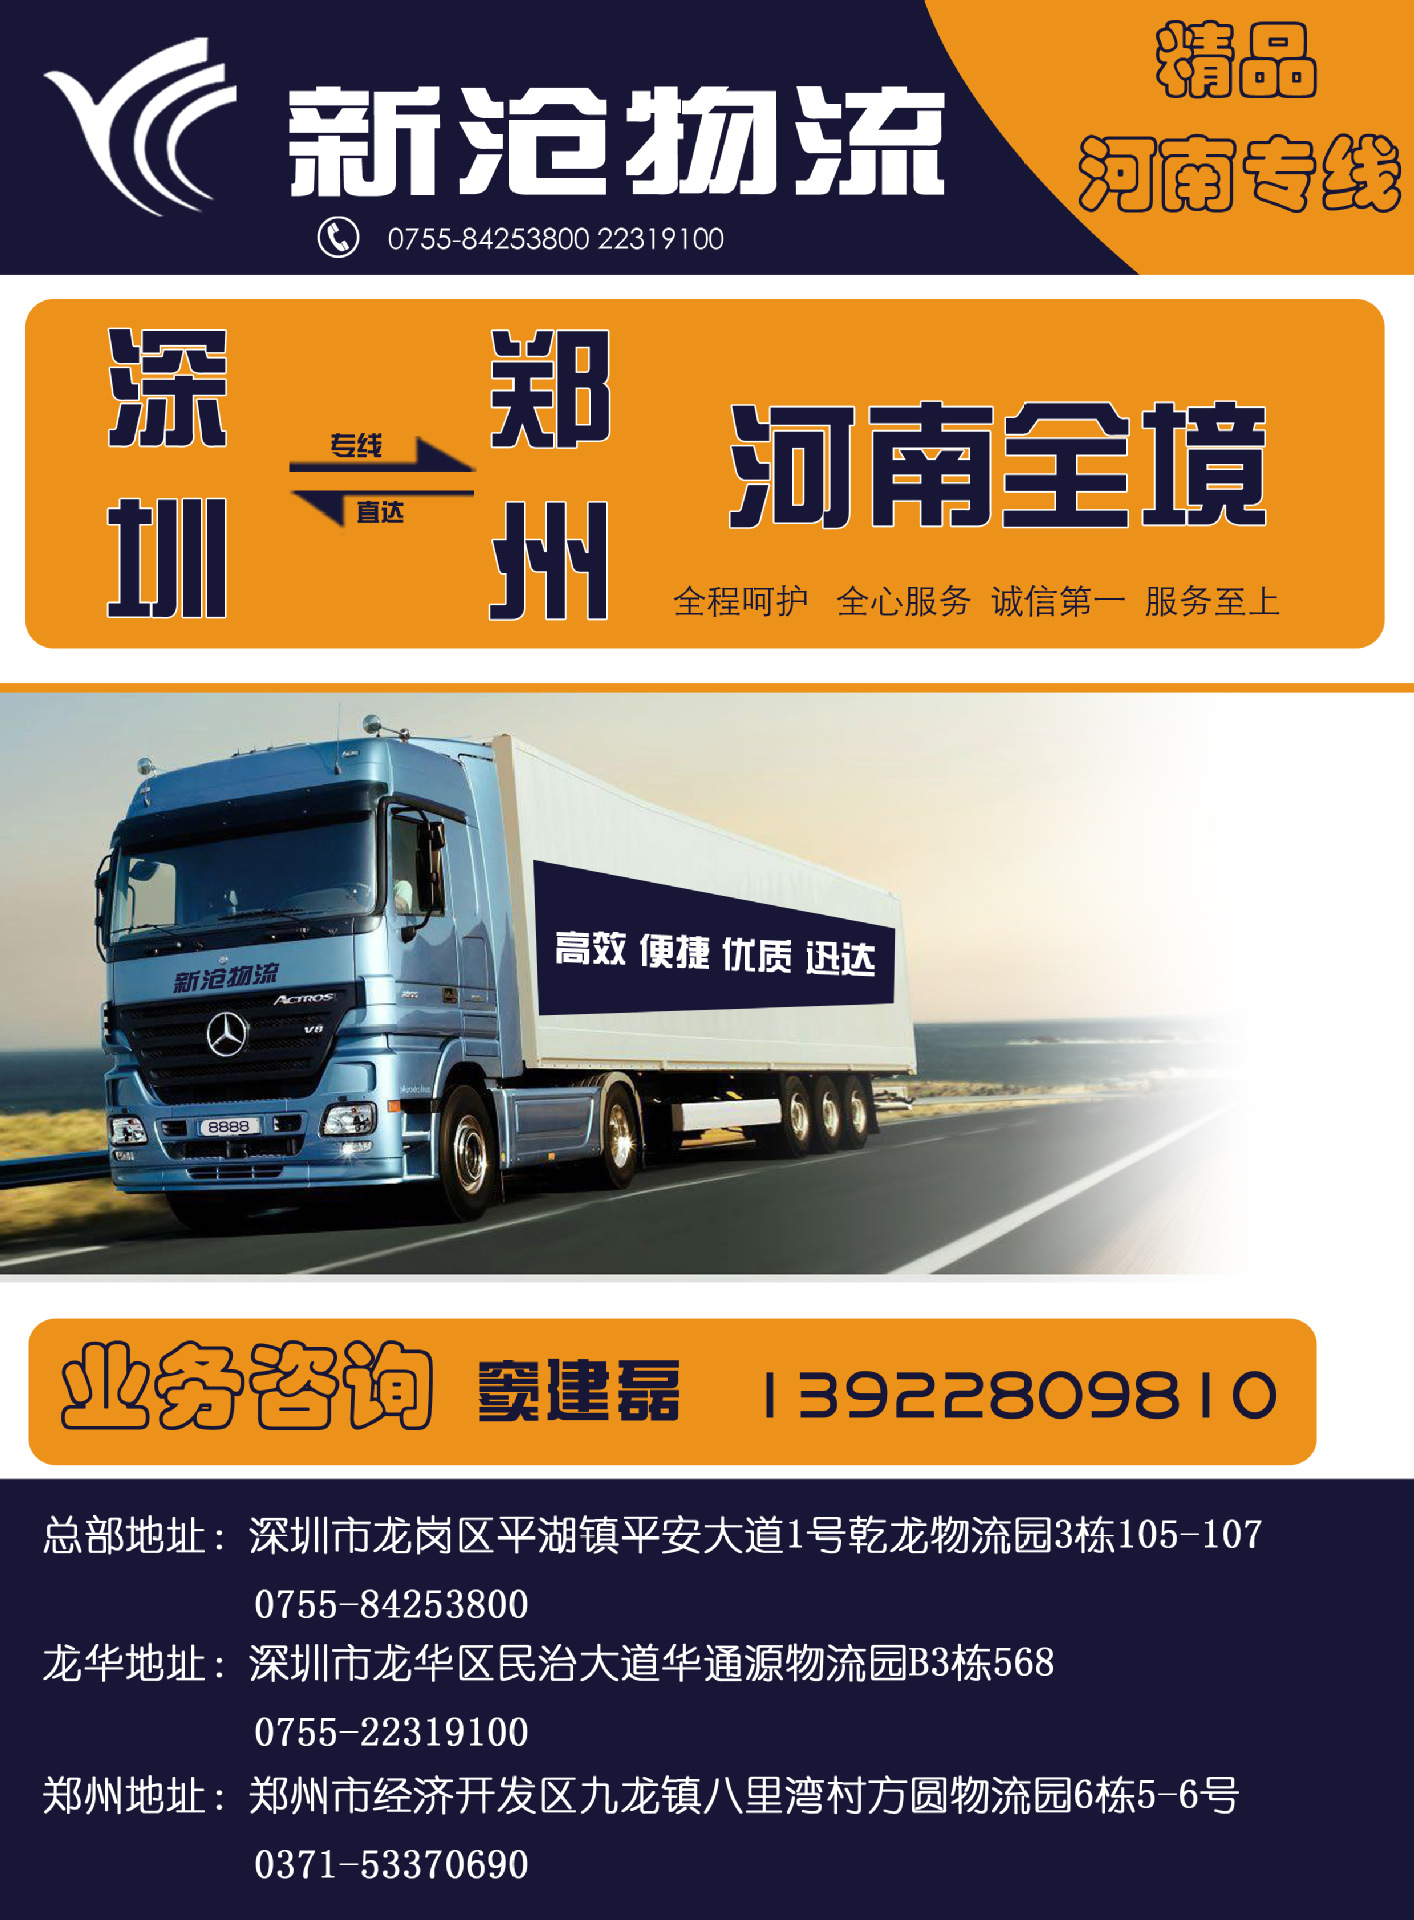 深圳至北京 天津专线物流 支持快件运输 深圳物流公司 专线物流